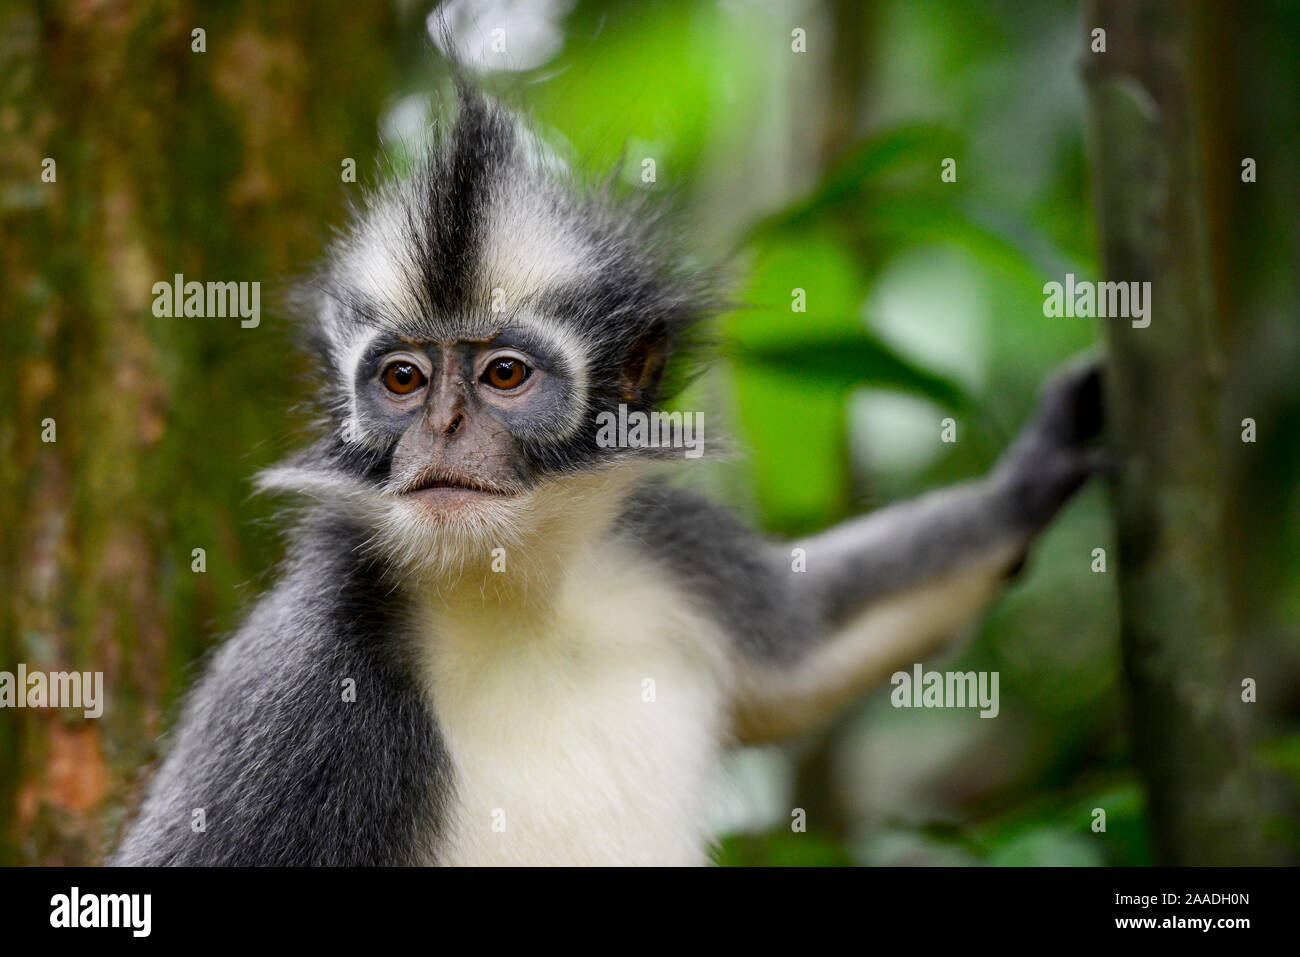 Thomas Langur (jugendsportlern thomasi), Tier endemisch in Northern Sumatra. Diese primaten haben relativ lange Arme und Beine, angepasst für eine akrobatische Leben in den Kronen der Bäume. Gunung Leuser Nationalpark, UNESCO-Weltkulturerbe, November. Stockfoto